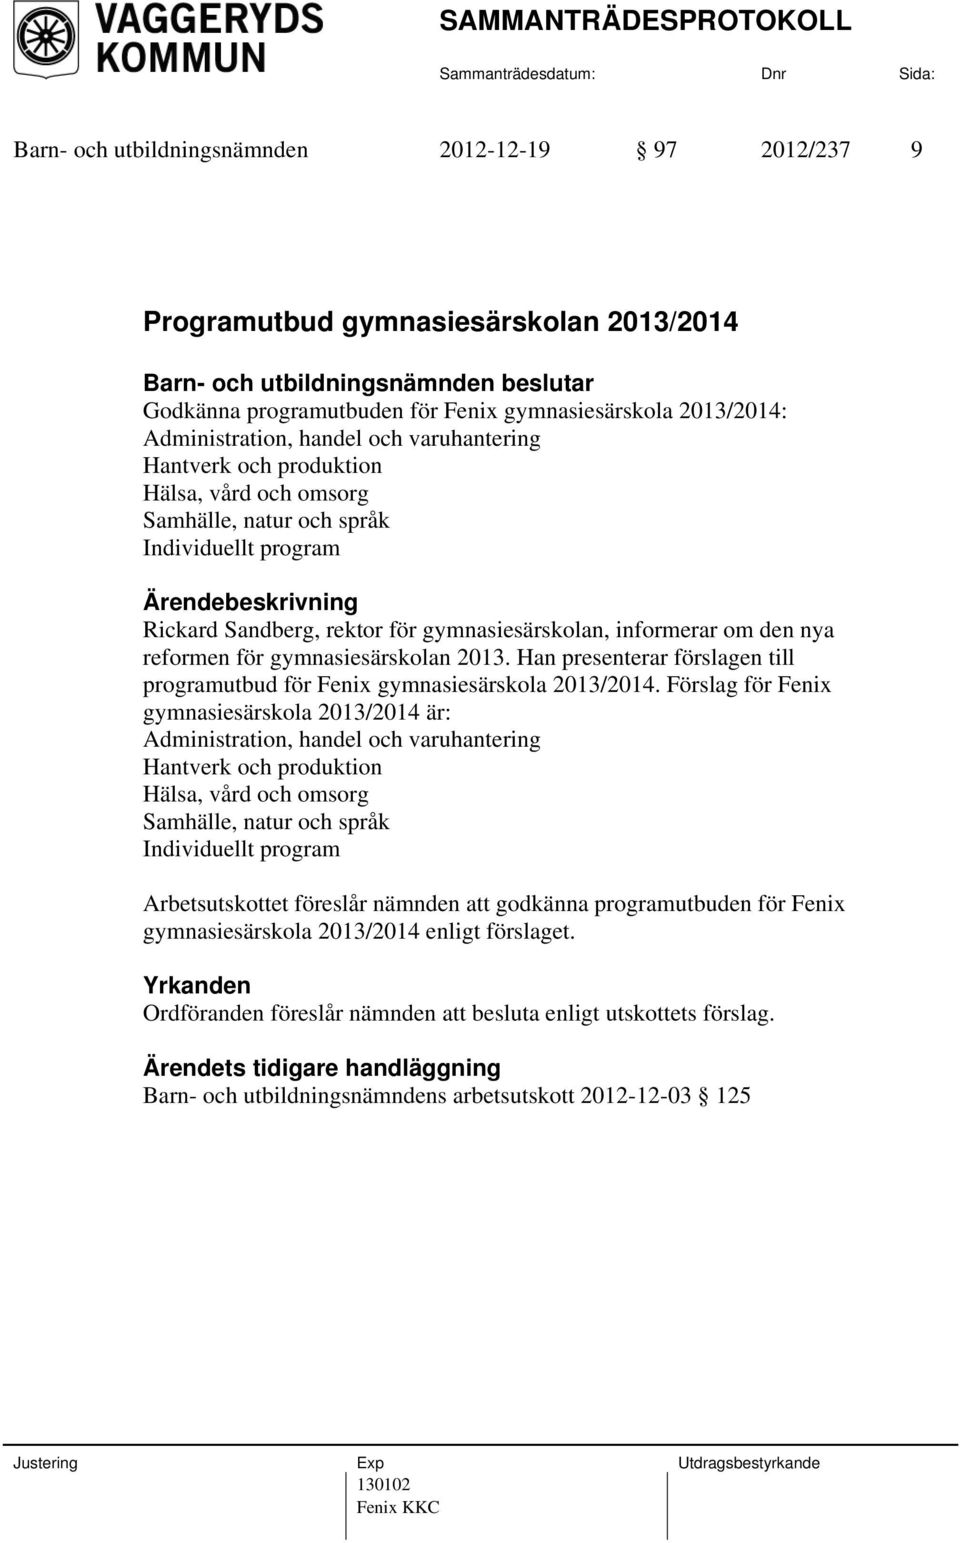 Han presenterar förslagen till programutbud för Fenix gymnasiesärskola 2013/2014.